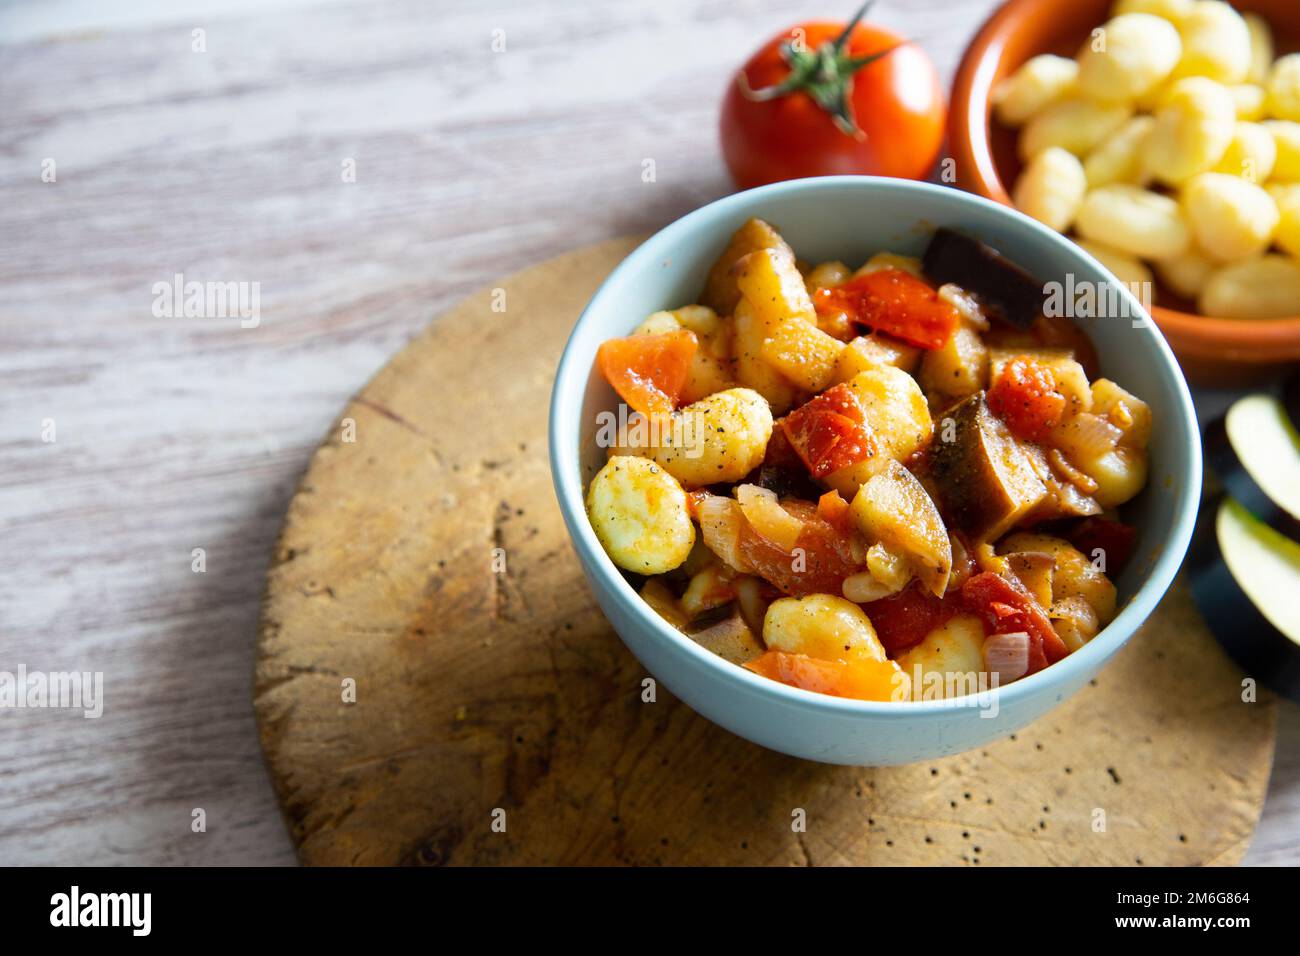 Gnocchi sauté aux légumes grillés. Recette italienne typique Banque D'Images